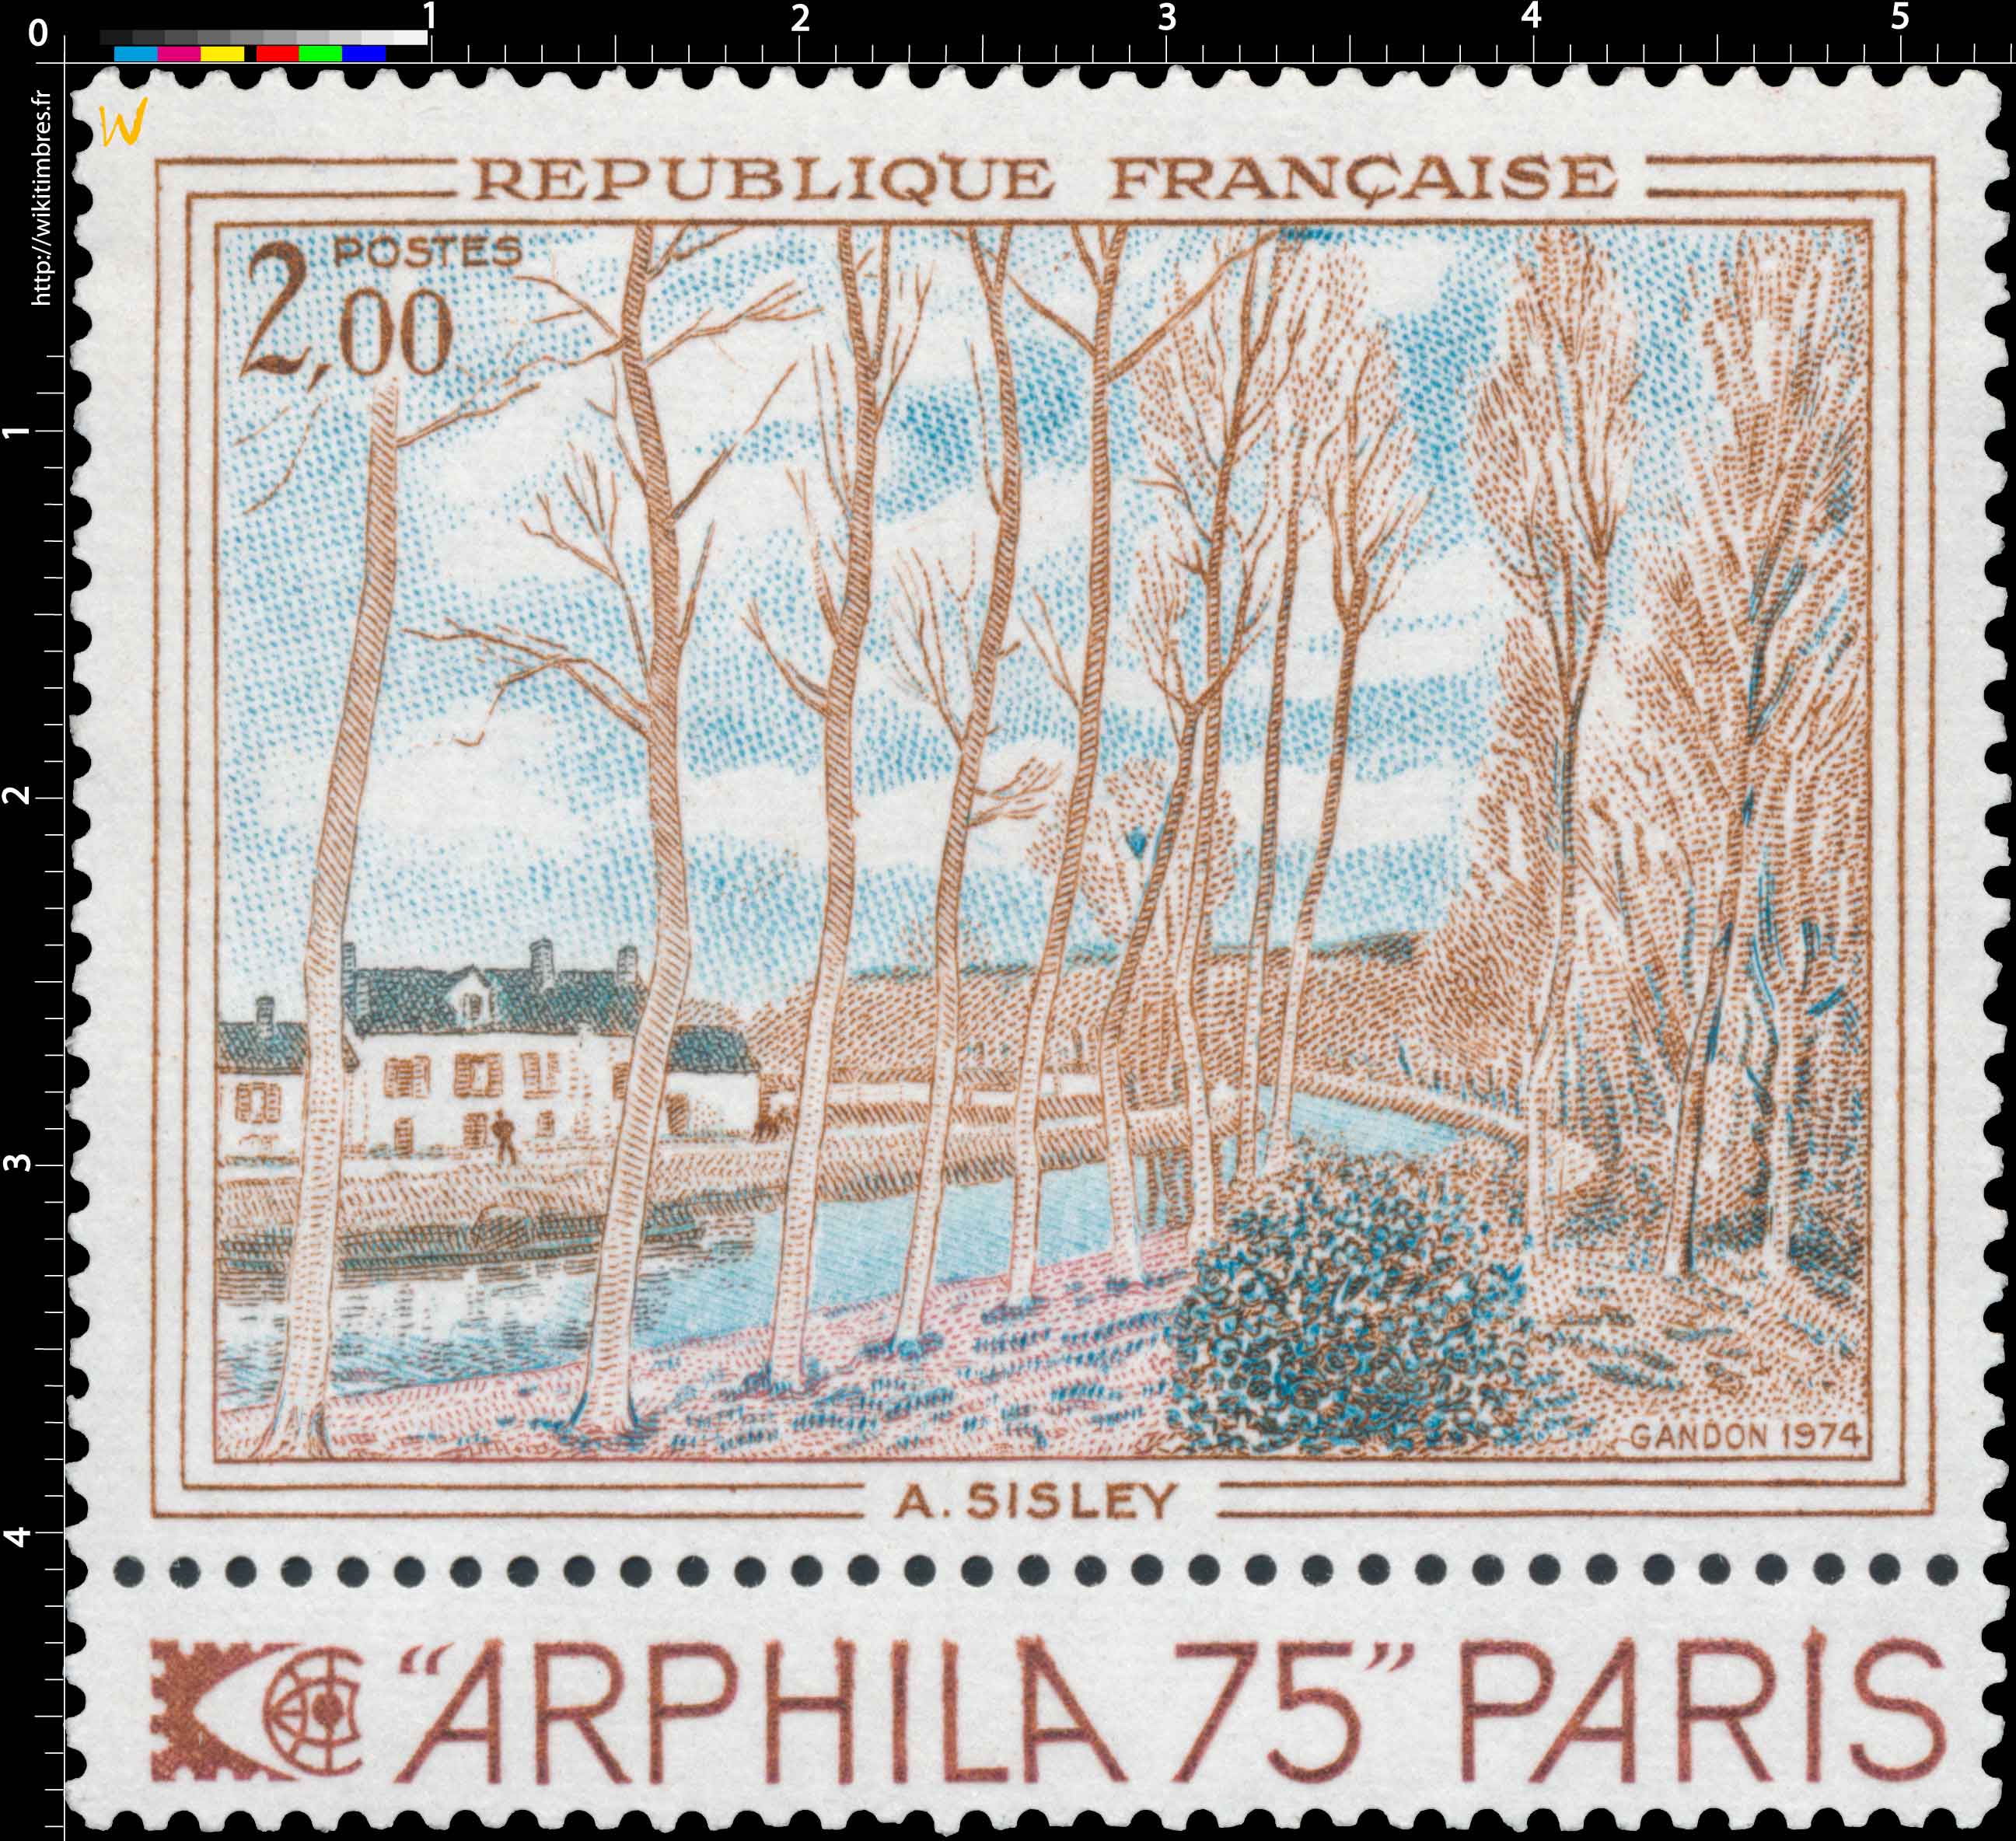 1974 A. SISLEY ARPHILA 75 PARIS